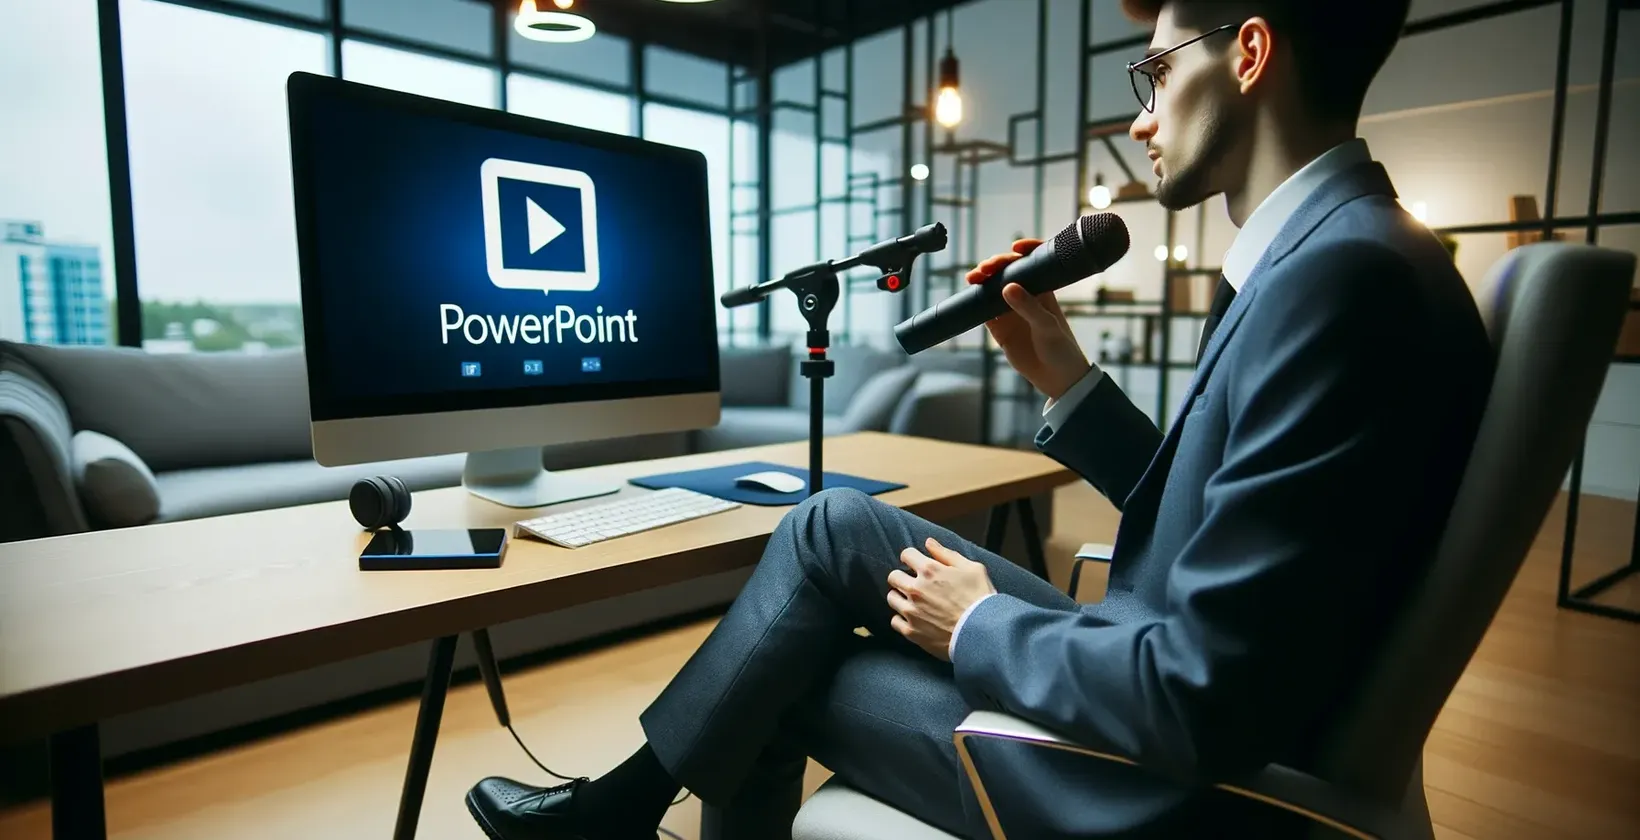 Man in kantoor met microfoon kijkt naar monitor met PowerPoint logo.